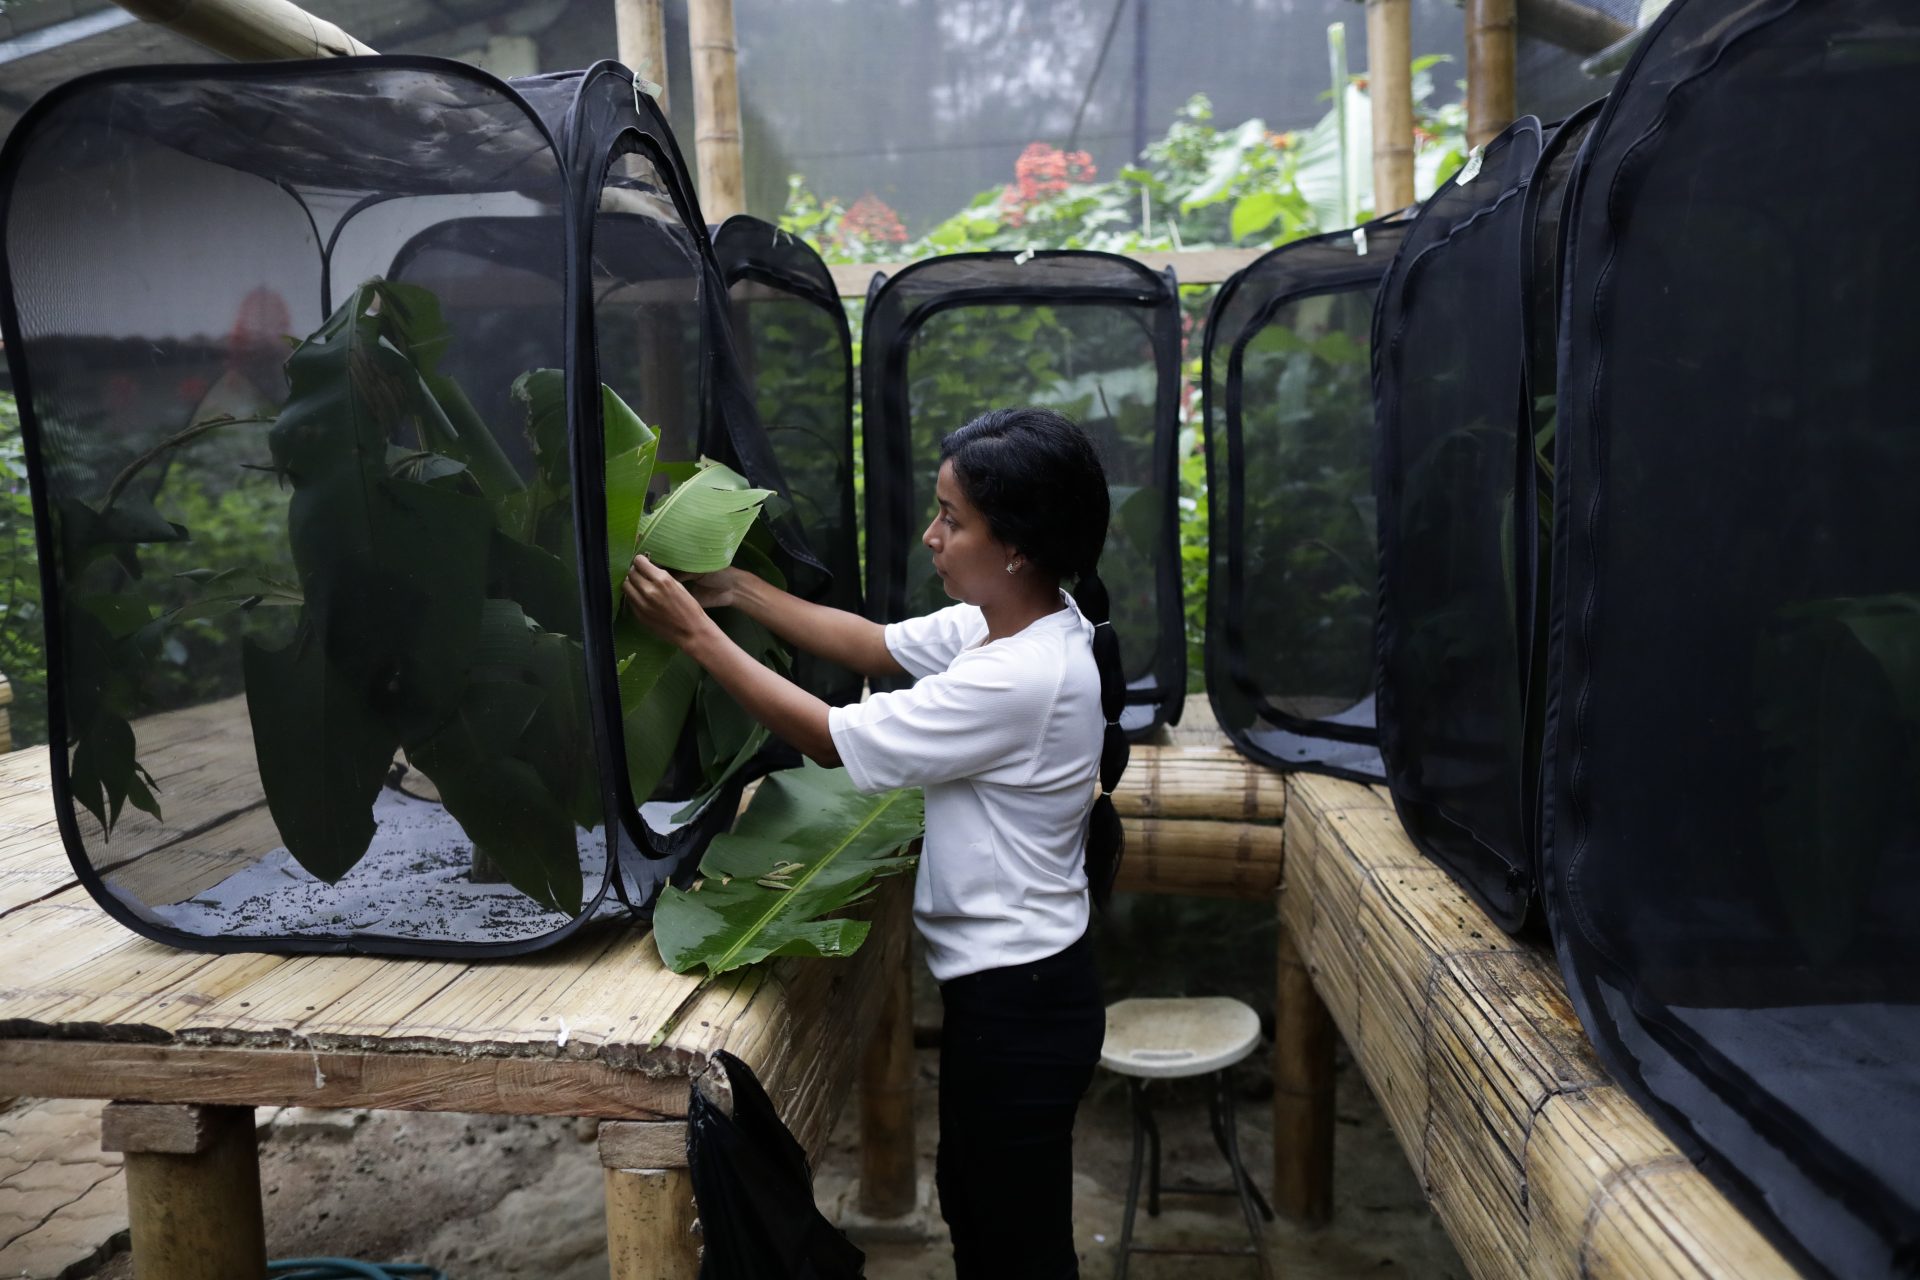 De ganadero a “granjero” de mariposas, el nuevo negocio ecológico emergente en Panamá